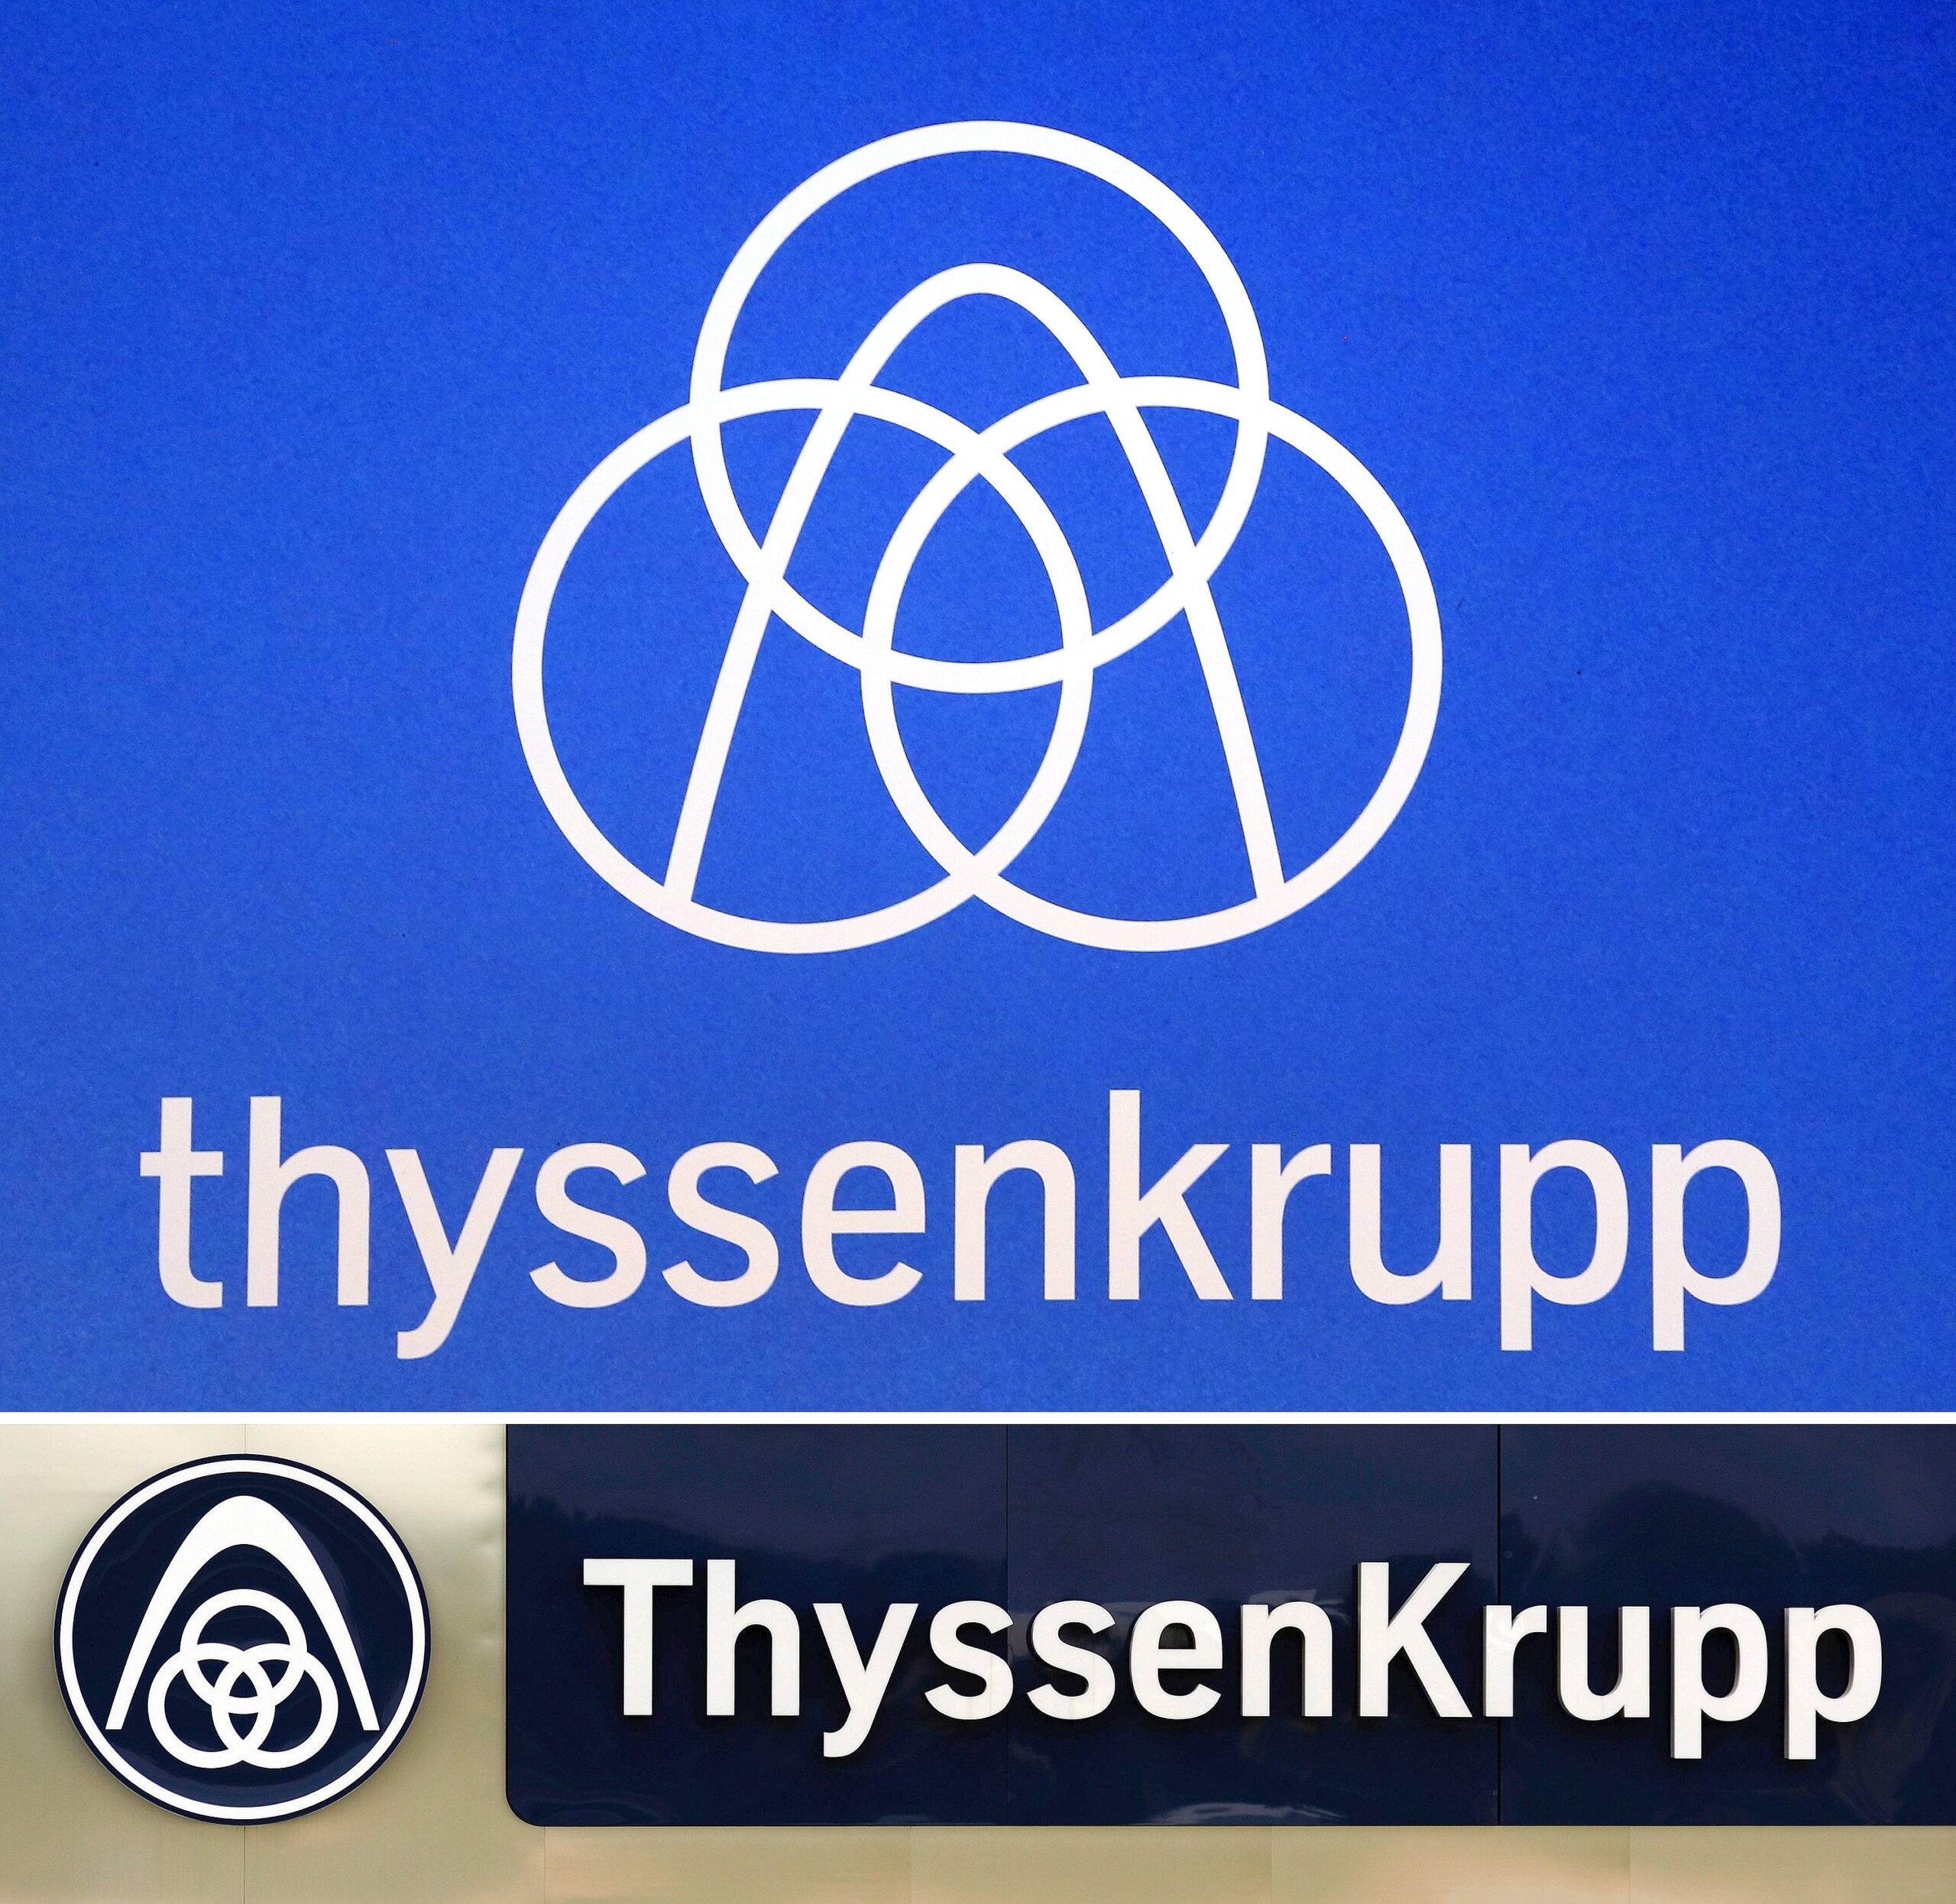 Das neue thyssenkrupp-Logo (oben). Darunter ist das alte Logo zu sehen.